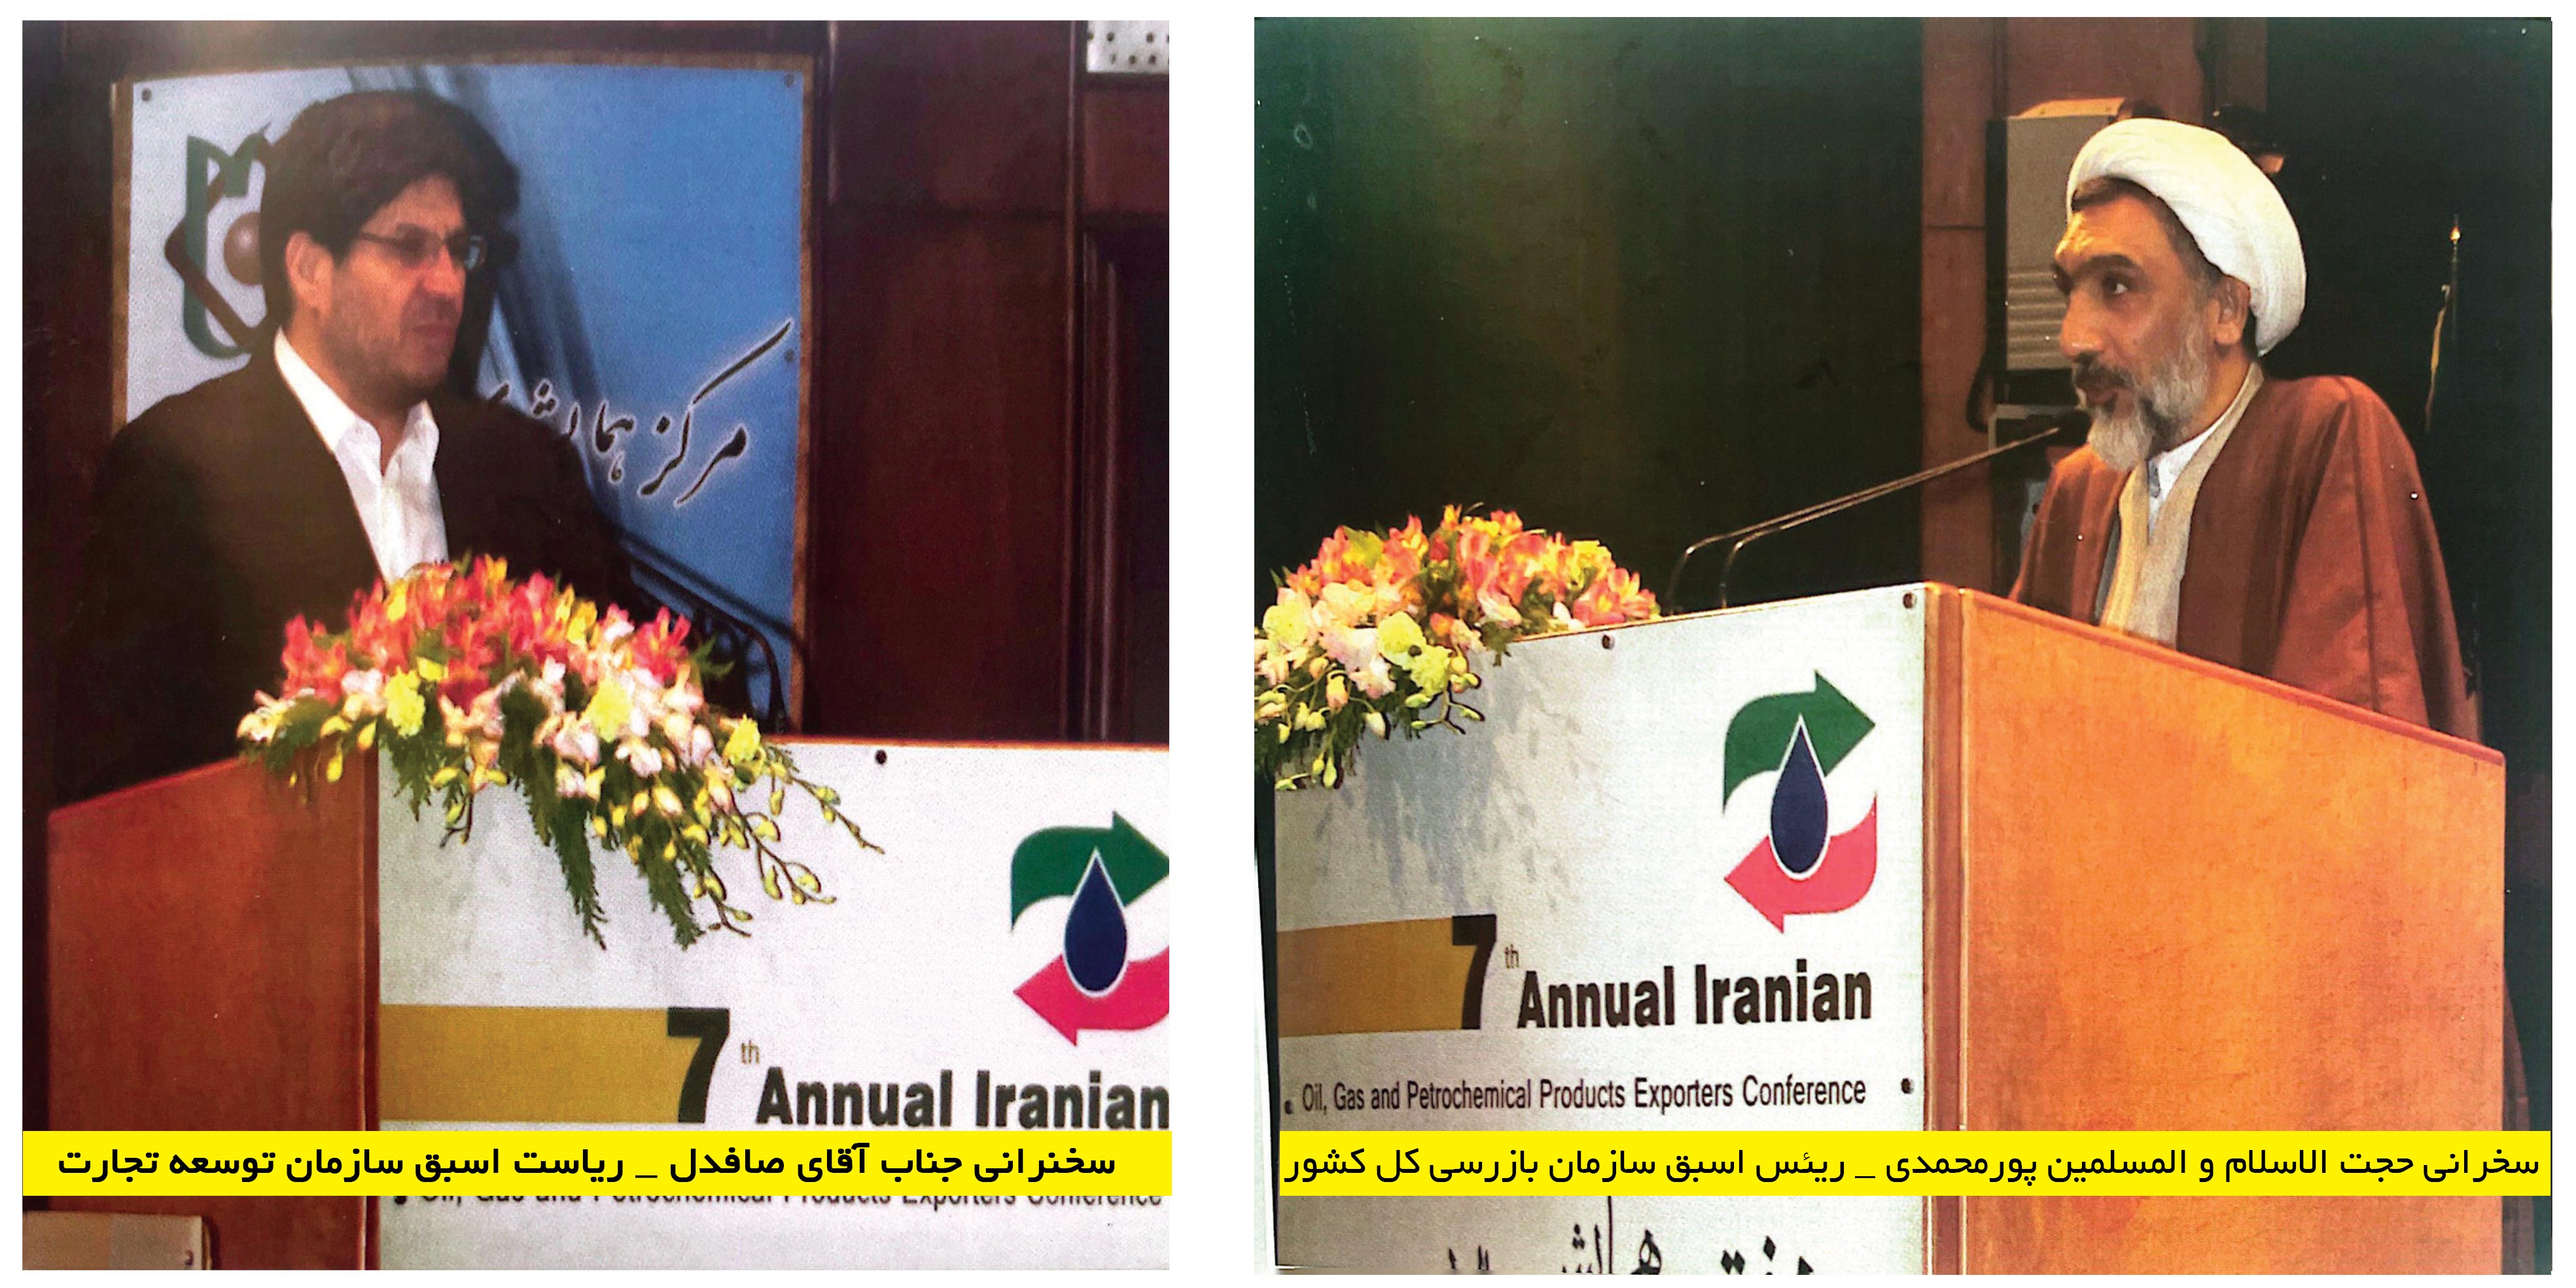 برگزاری هفتمین همایش سالانه صادرکنندگان فرآورده های نفت ، گاز ، پتروشیمی ایران